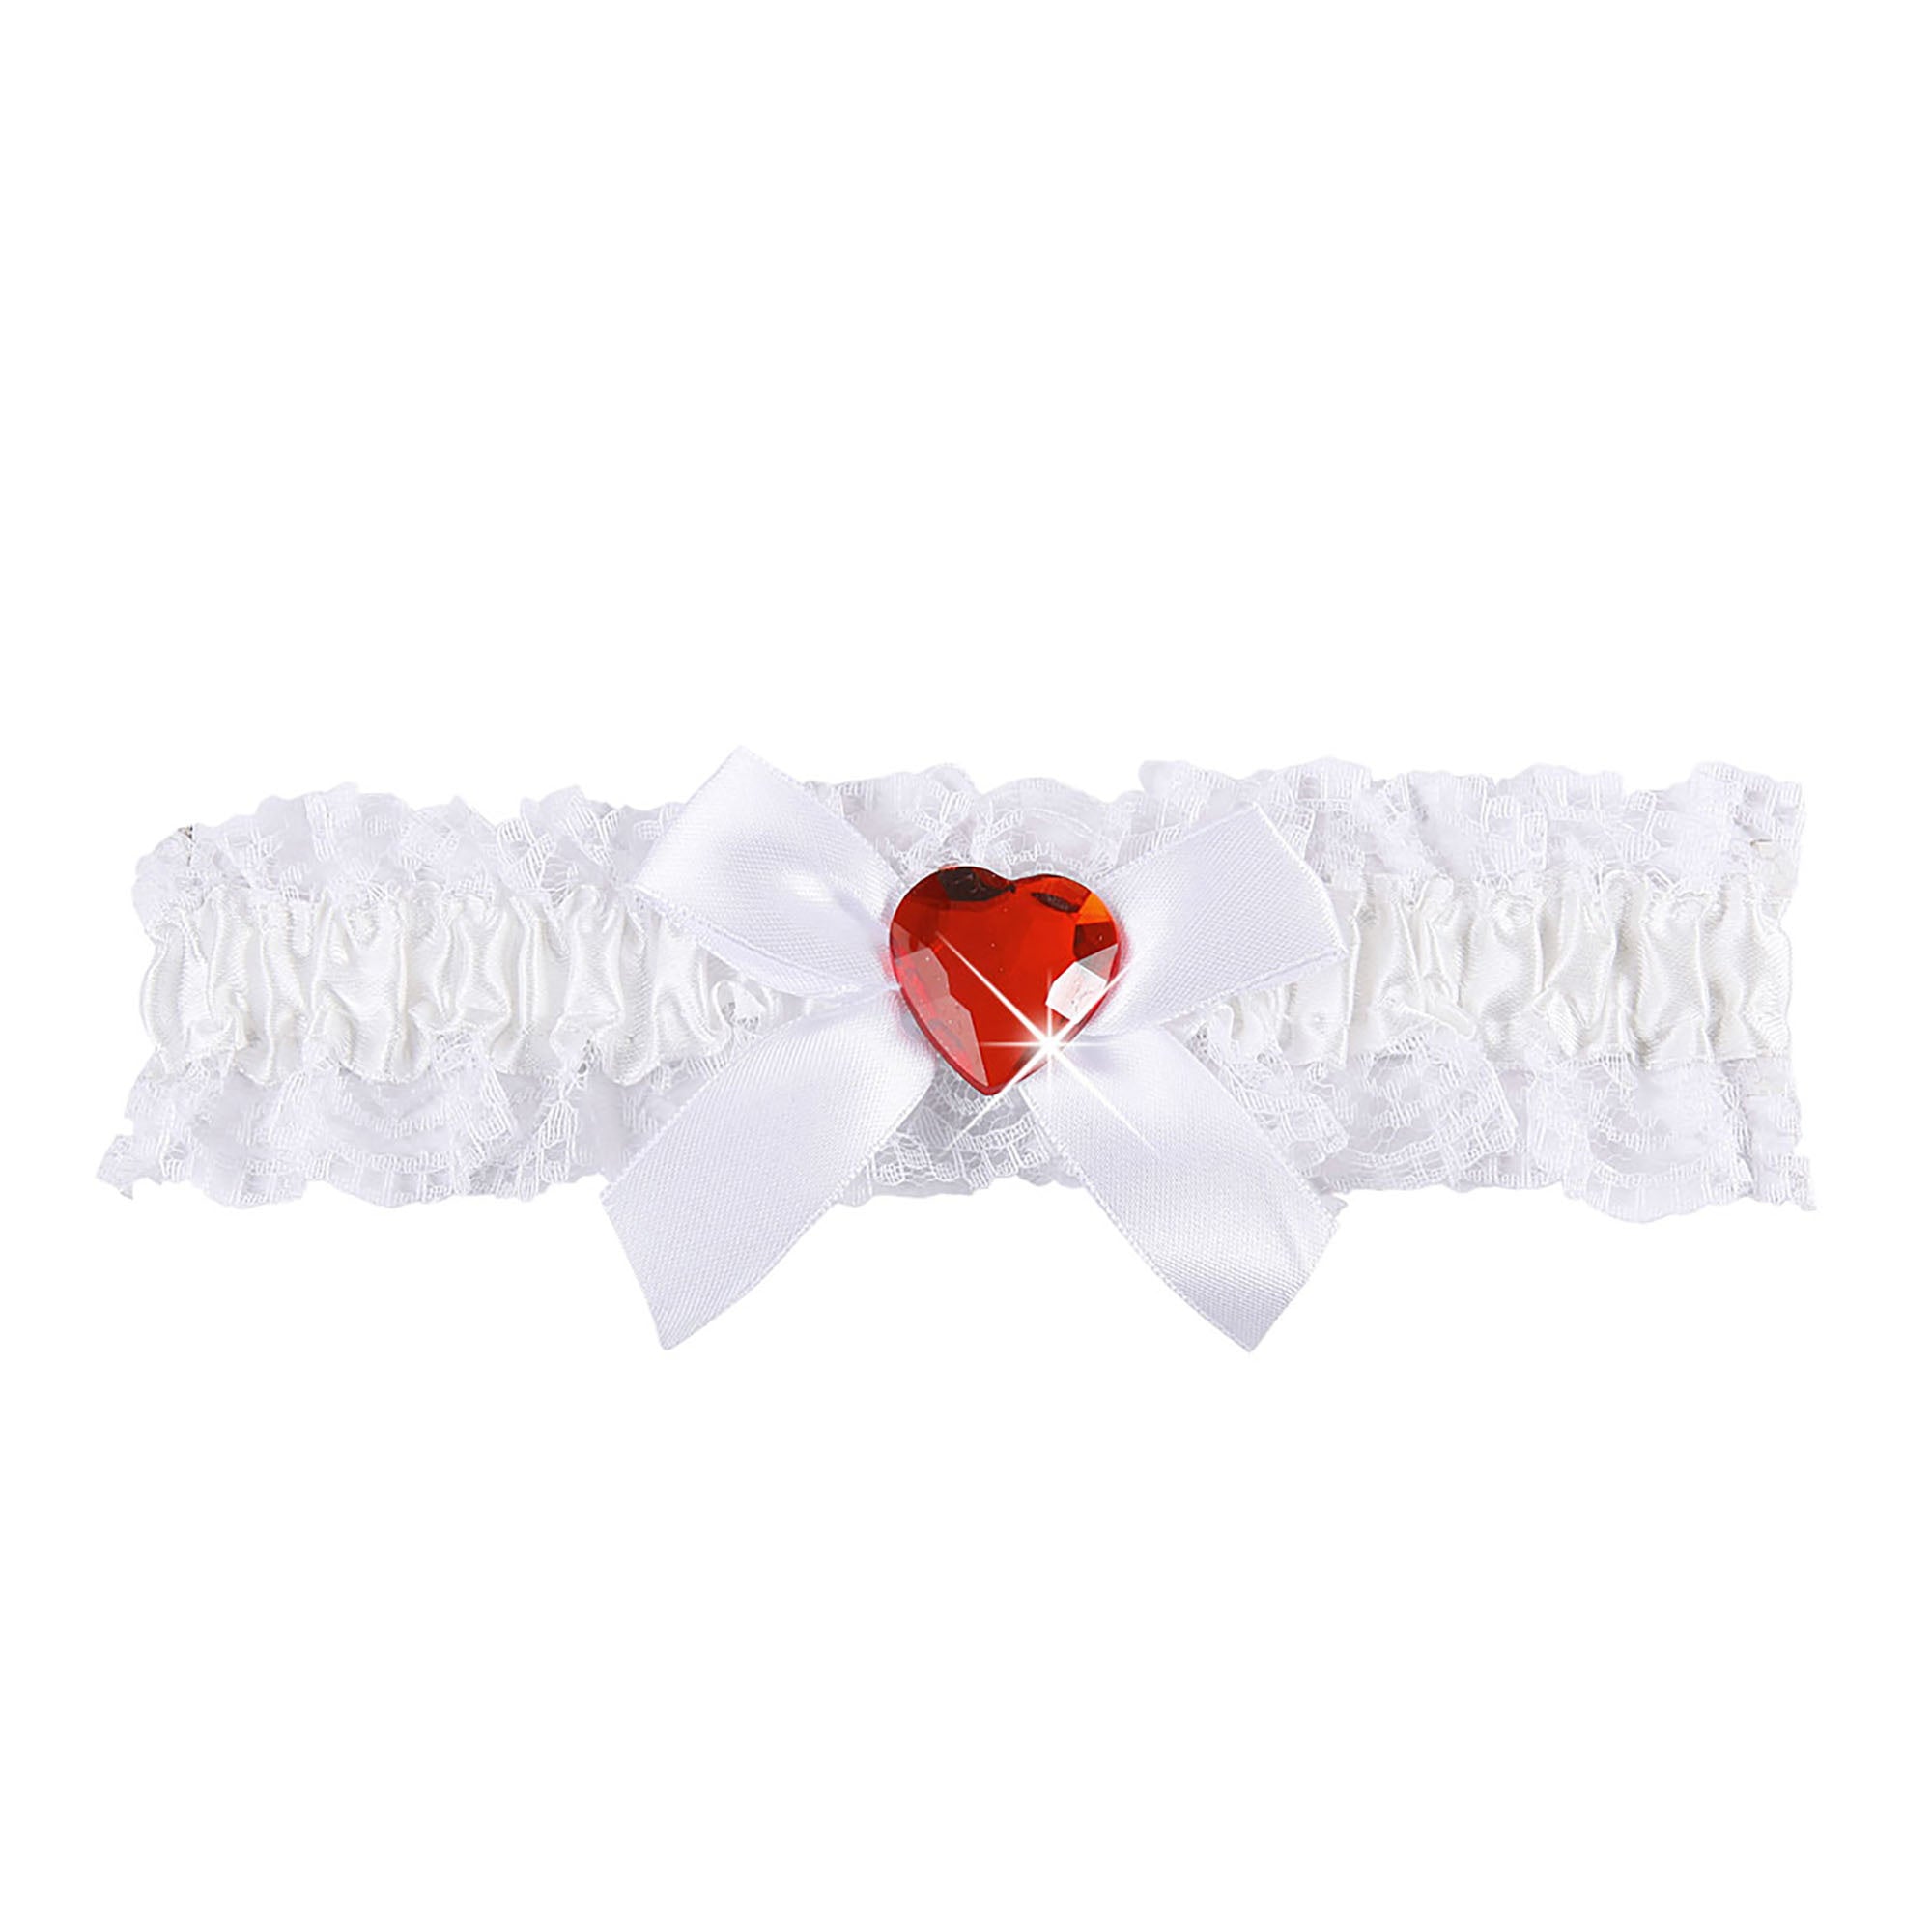 WIDMANN - Sexy rood hart jarretel van wit kant voor vrouwen - Accessoires > Panty's en kousen